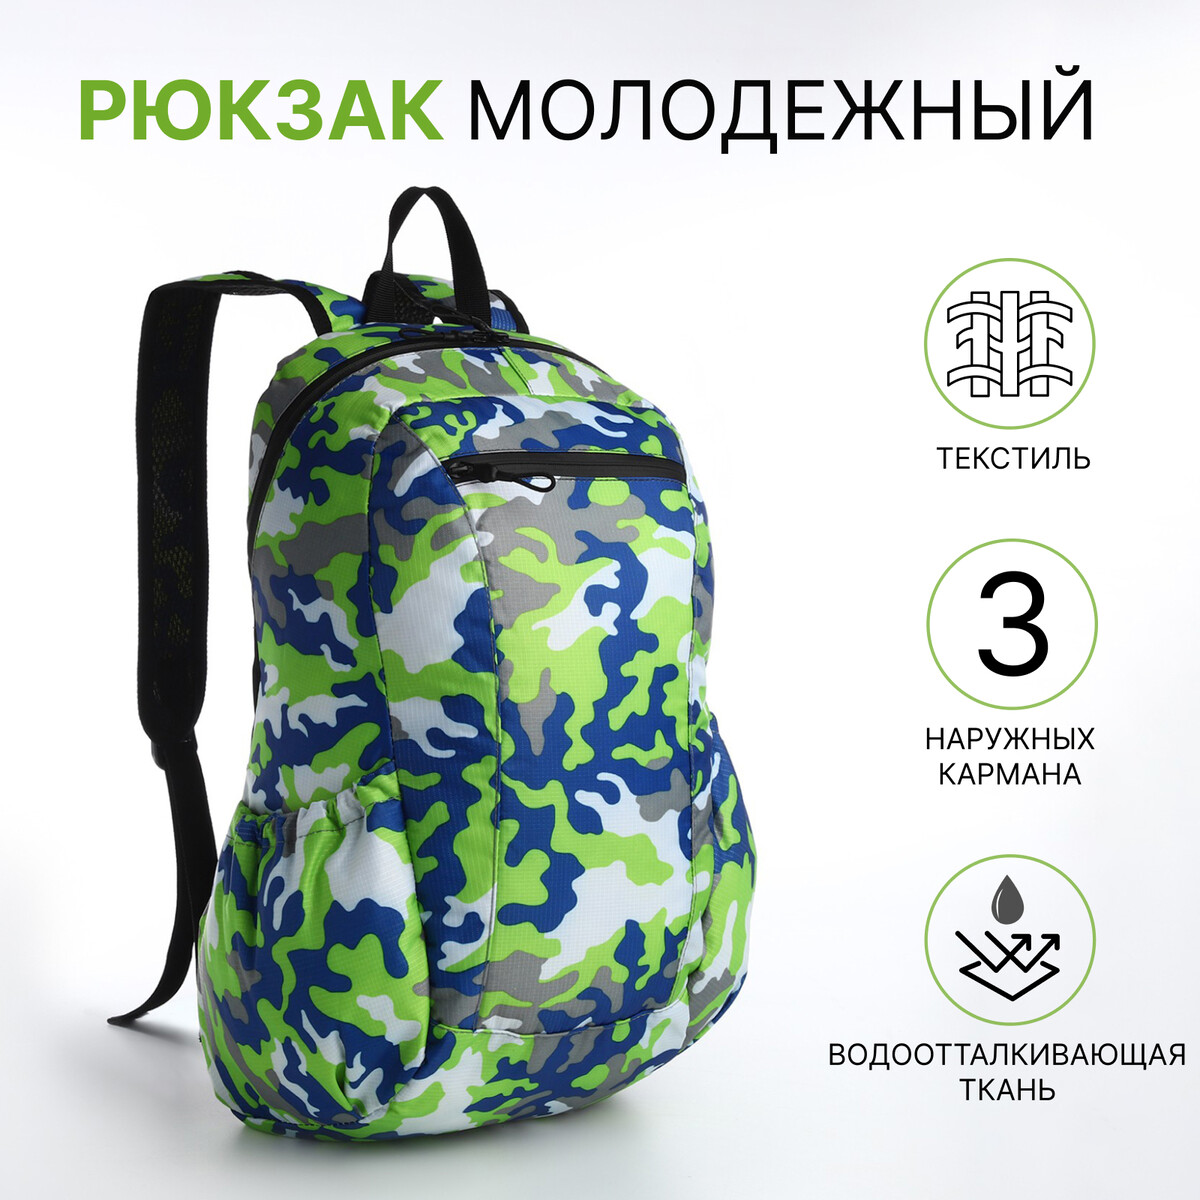 Рюкзак молодежный, водонепроницаемый на молнии, 3 кармана, цвет зеленый рюкзак молодежный из текстиля на молнии 3 кармана зеленый